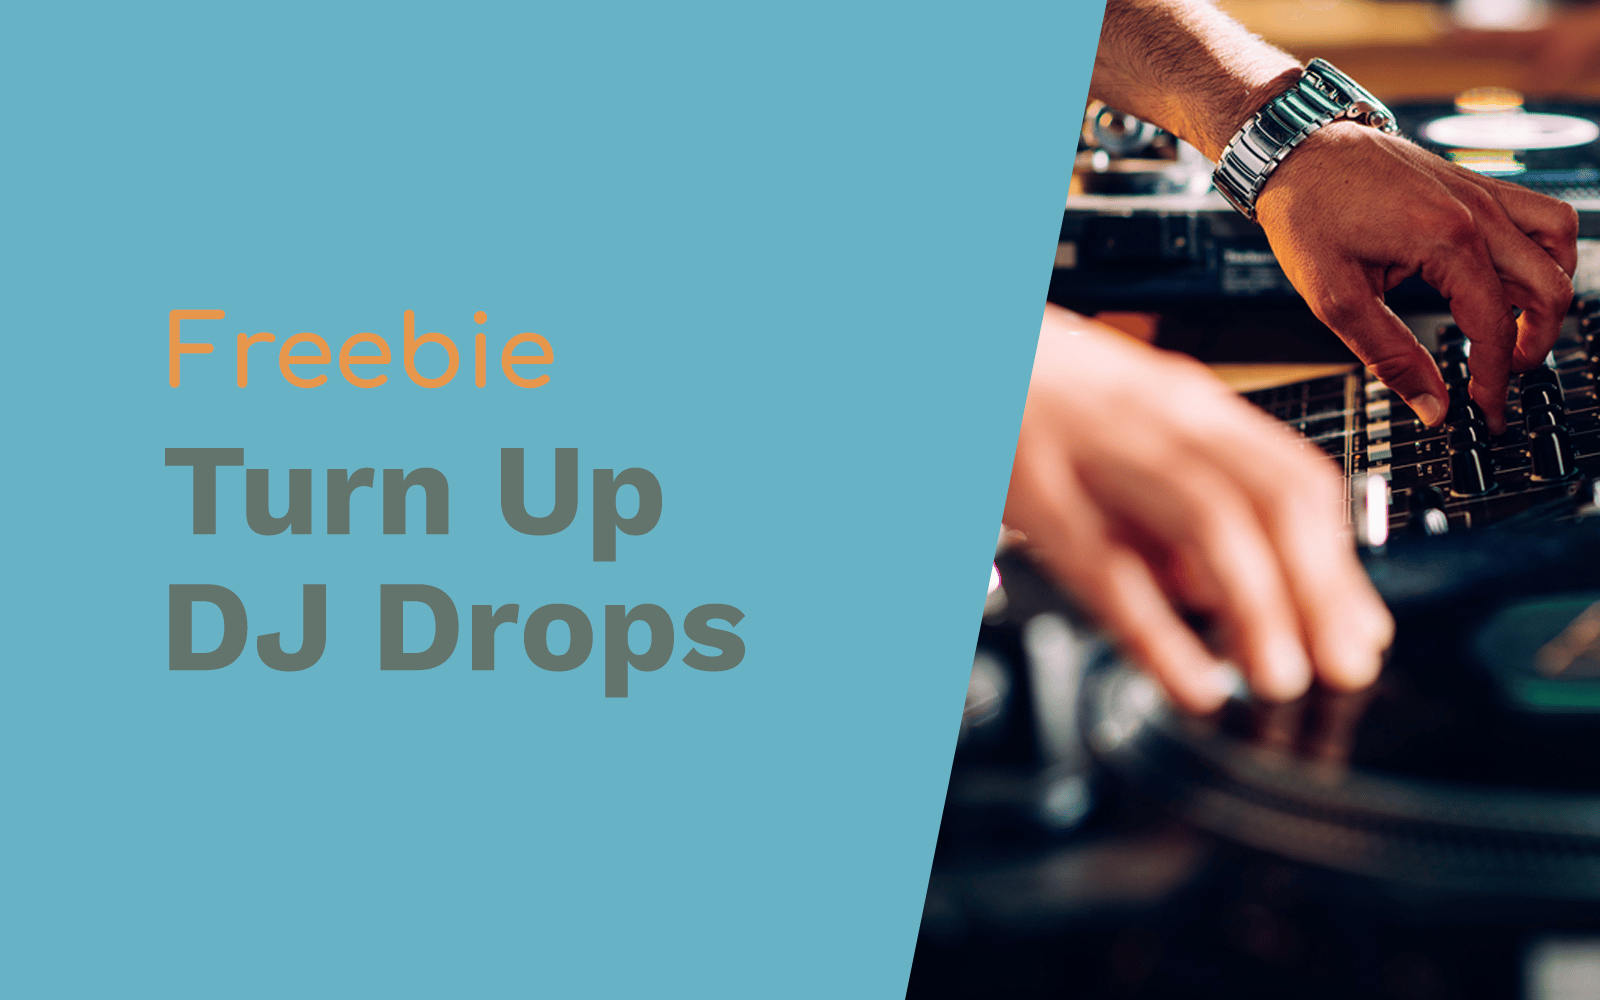 Turn Up The Volume DJ Drops DJ Drops dj drops Music Radio Creative